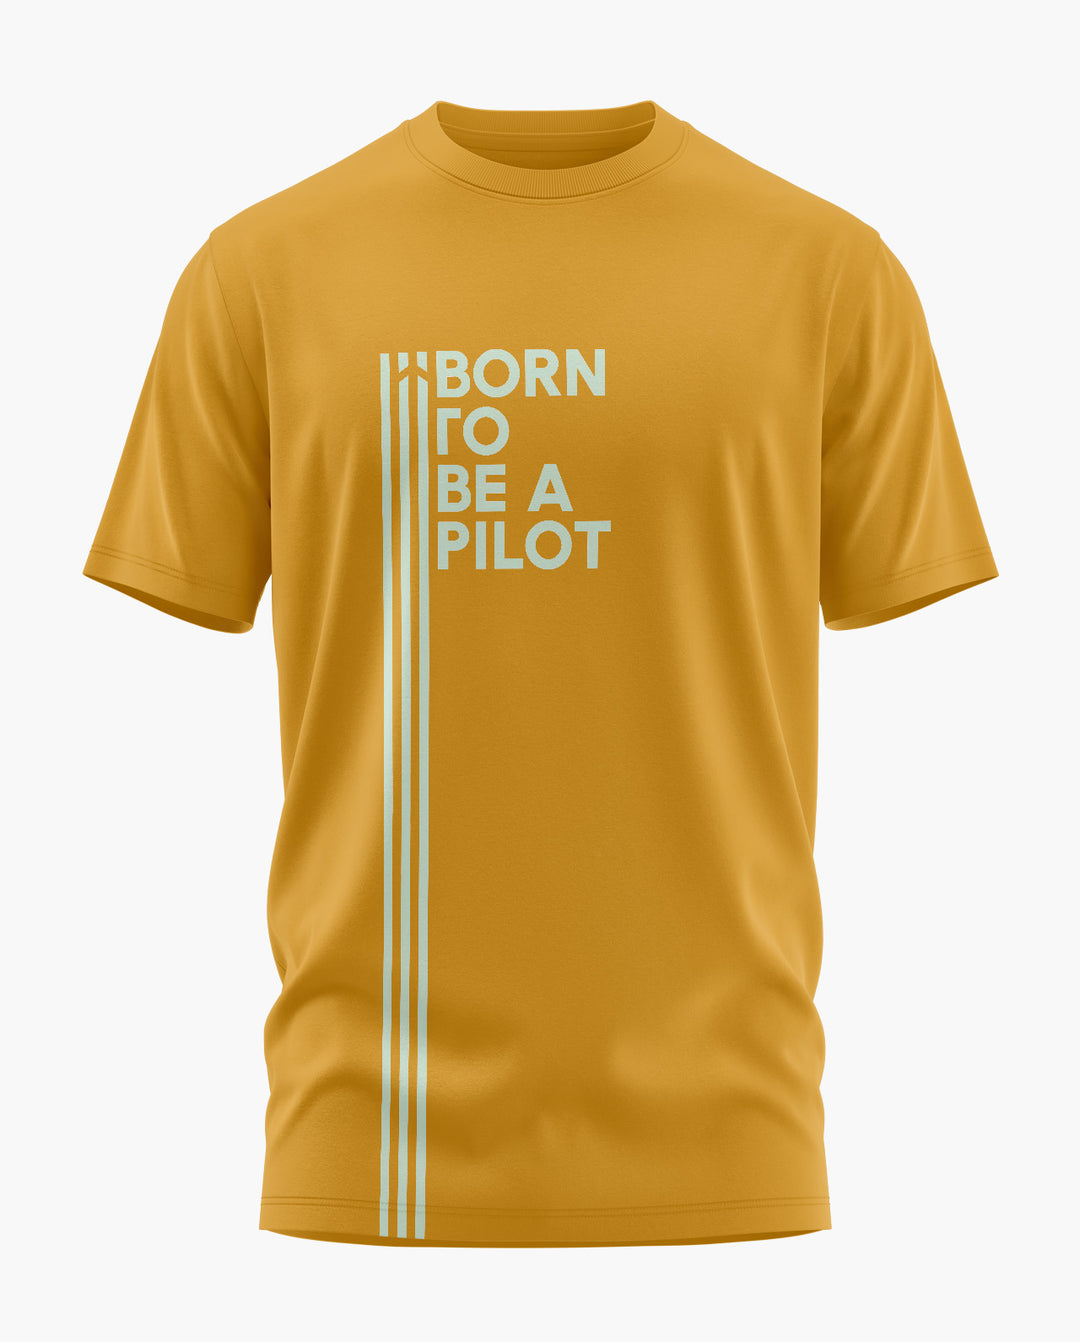 Born to be Pilot T-Shirt - Aero Armour